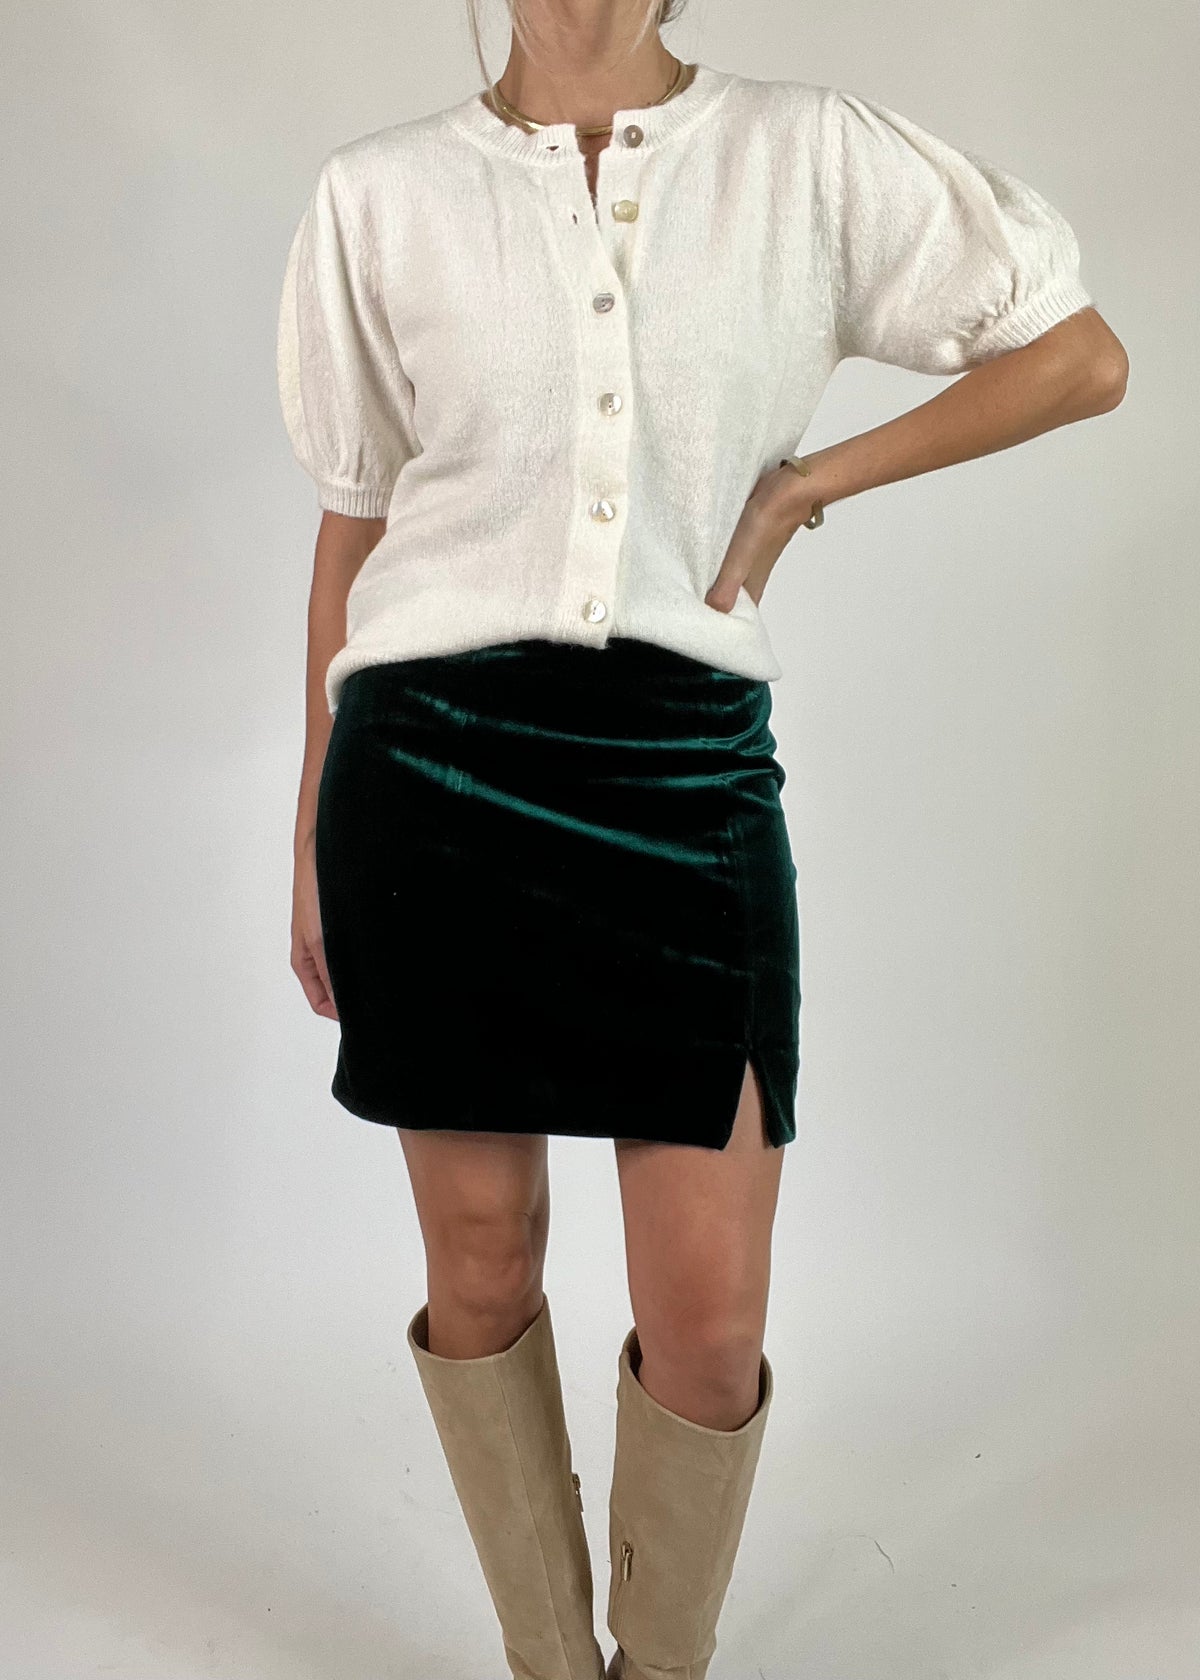 Velvet Side Slit Mini Skirt |FINAL SALE